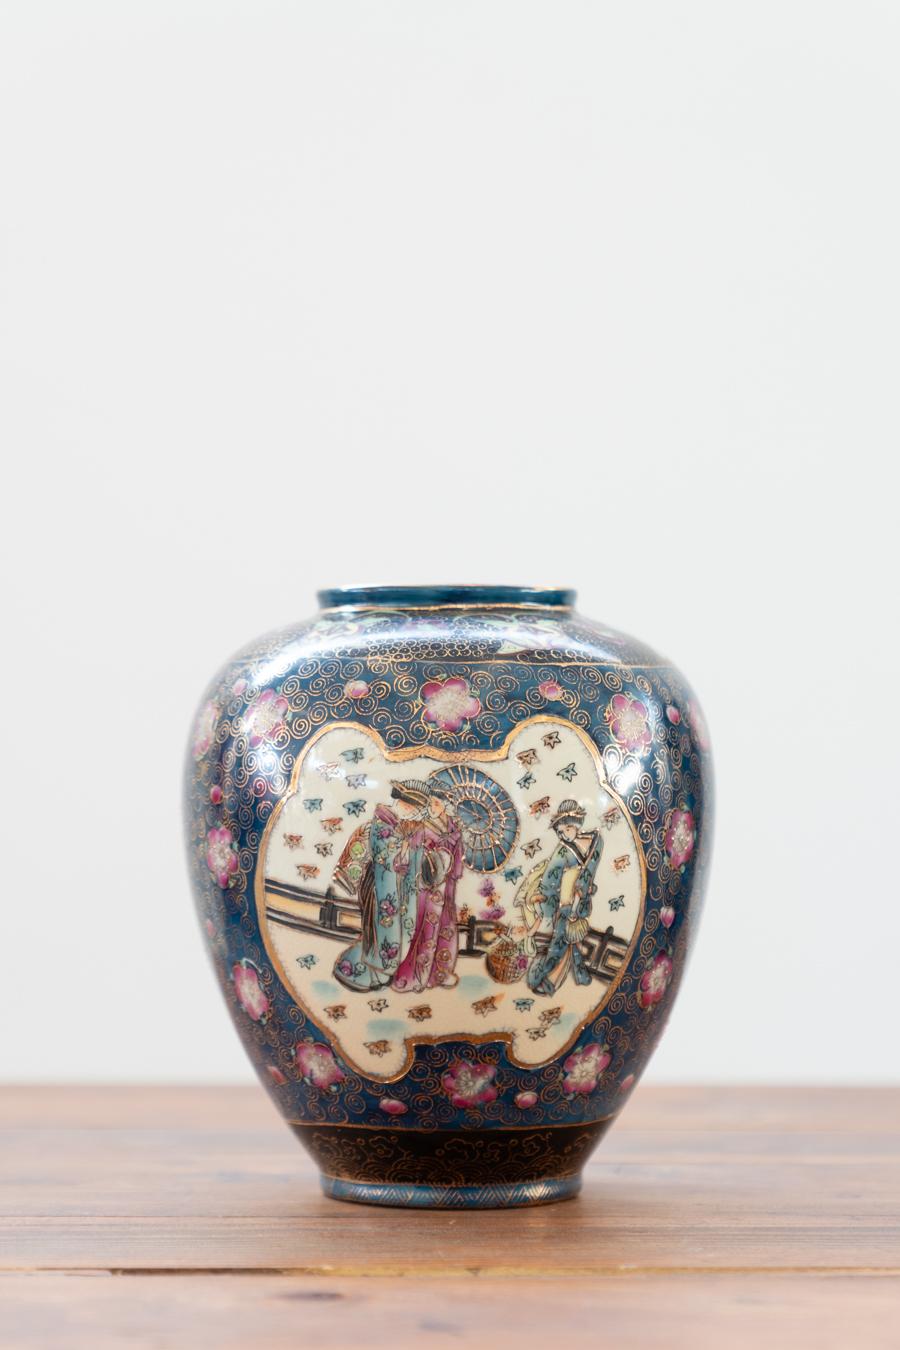 Vases anciens japonais en porcelaine, période Meiji, art oriental en 				porcelaine  19e siècle, ensemble de 2						
DESCRIPTION	Dimensions du petit vase : H22 x D20 - Kg3
	Dimensions du grand vase : H30 x D20 - Kg5
	
PIÈCES	2	

PÉRIODE DE